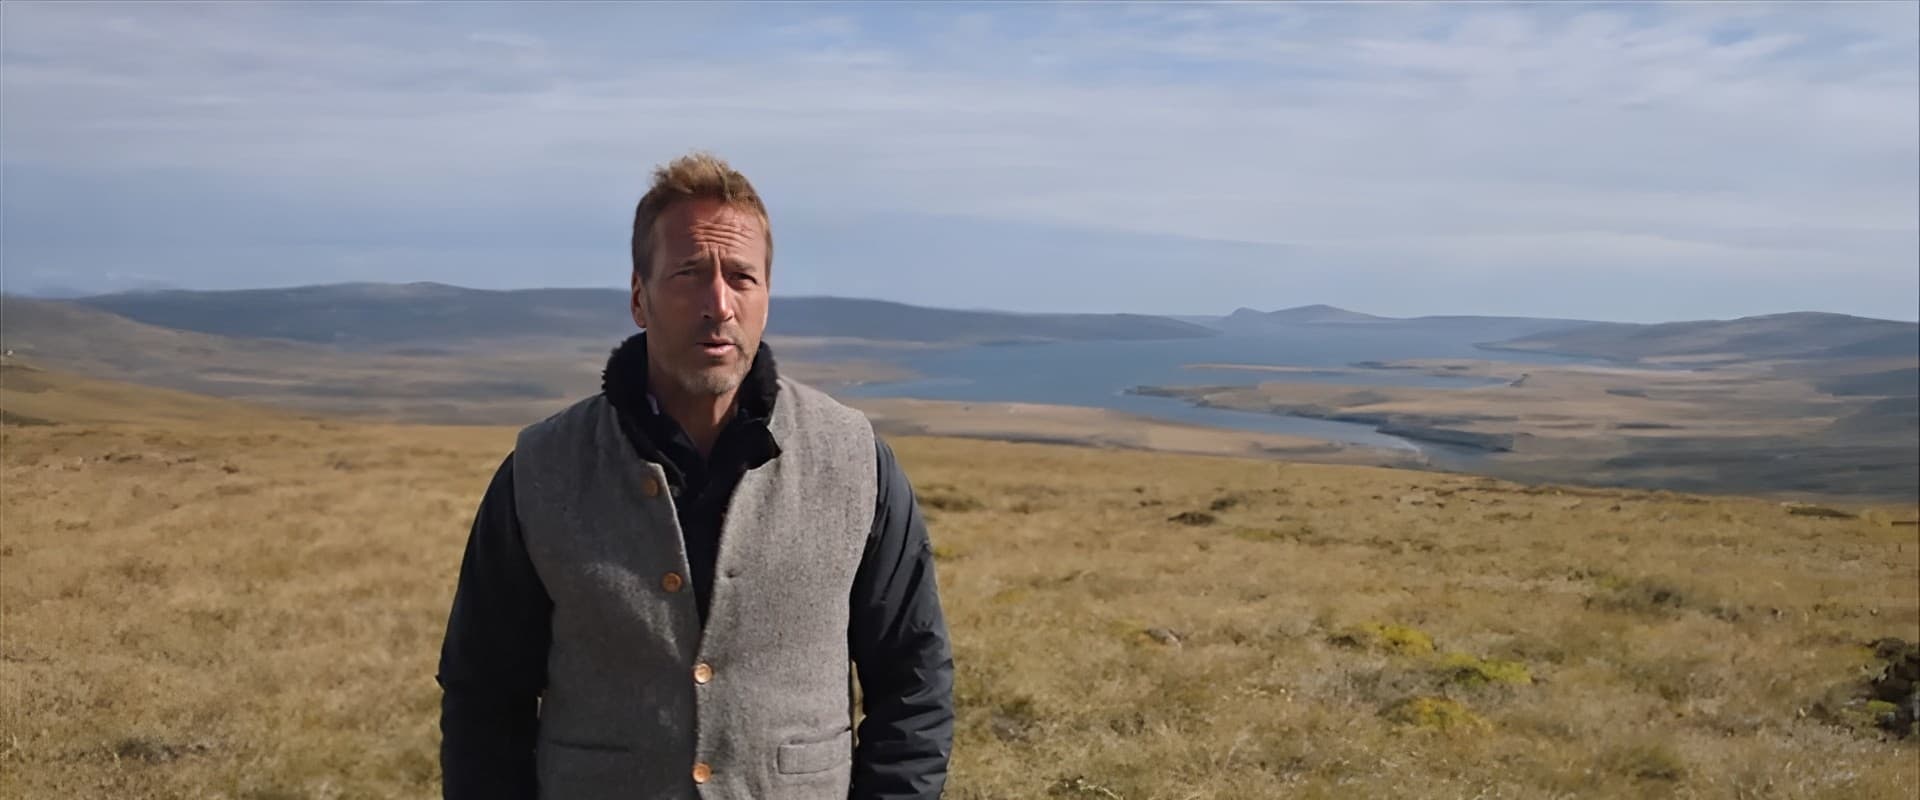 Falklands War: The Forgotten Battle